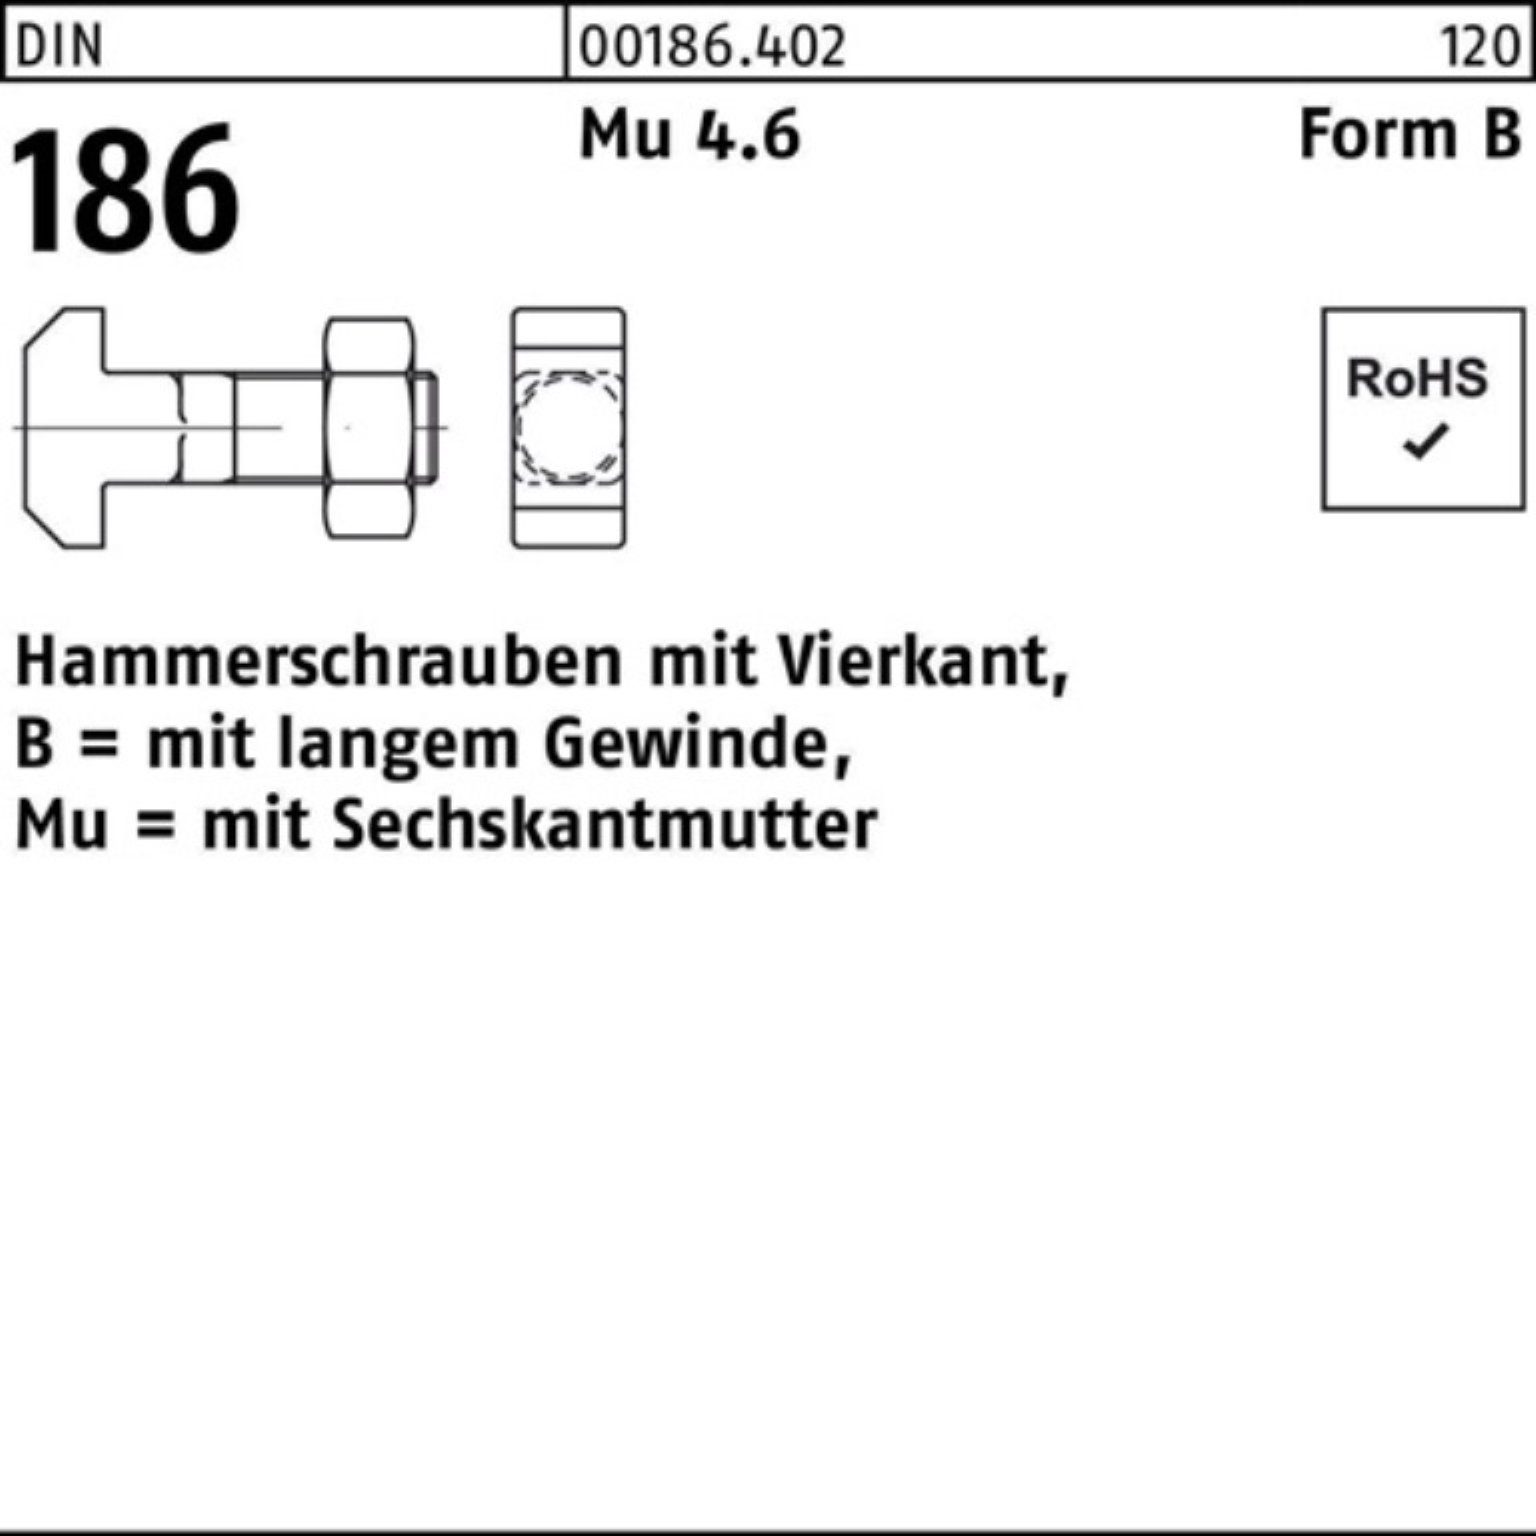 Reyher Schraube Hammerschraube FormB Vierkant 186 6-ktmutter Pack DIN 40 12x BM 100er